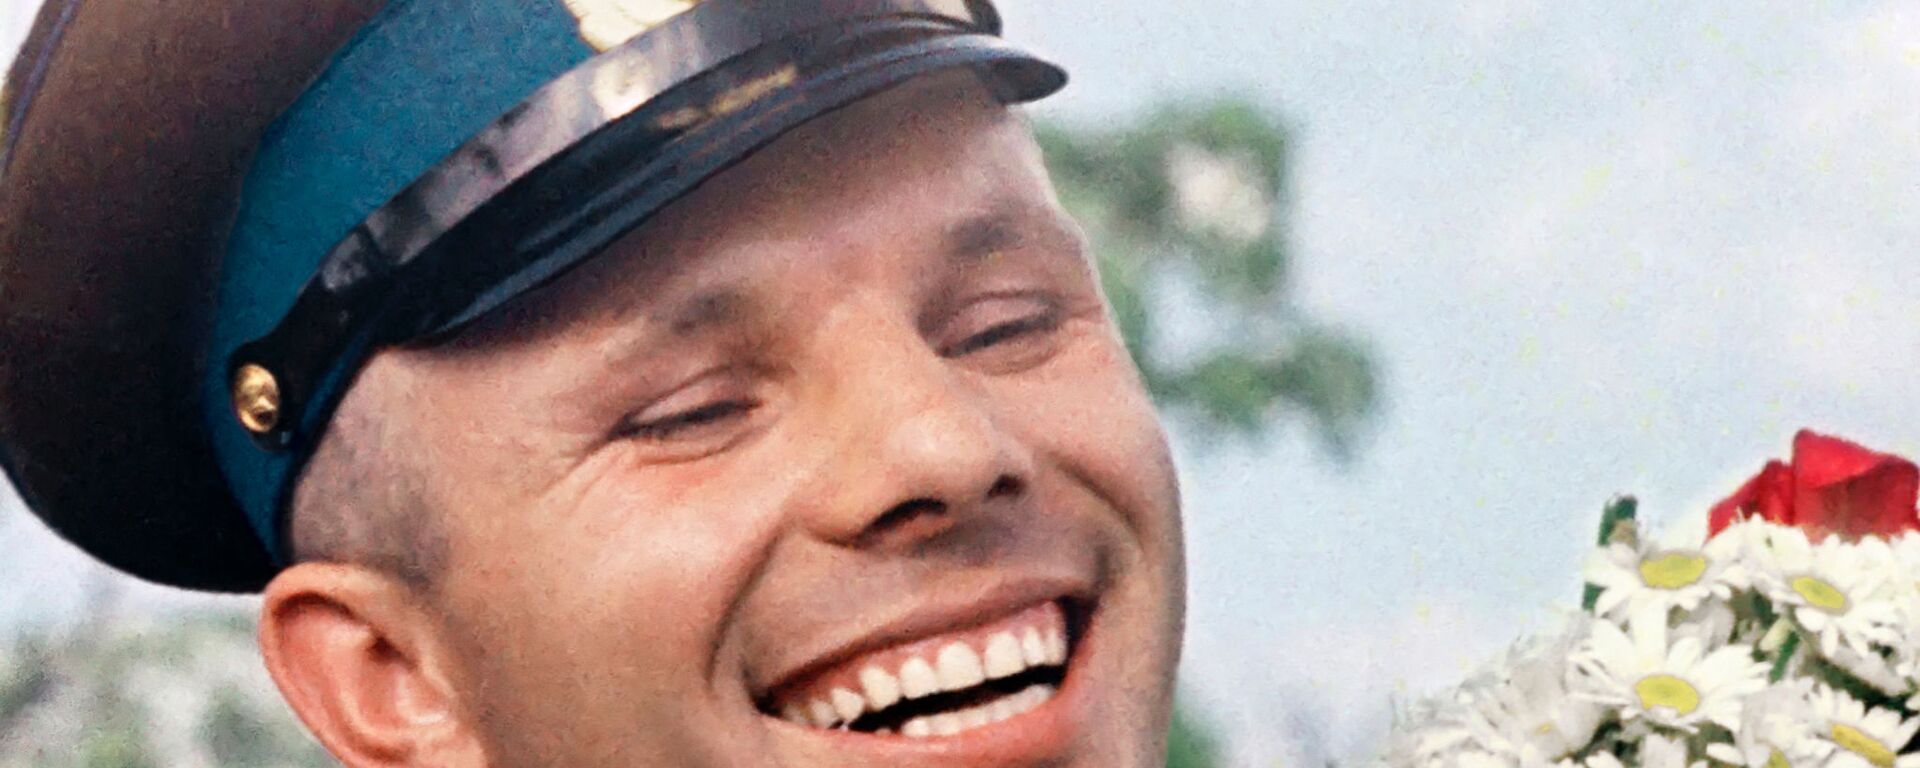 Široki osmeh na licu Jurija Gagarina dok drži buket cveća - Sputnik Srbija, 1920, 29.10.2021